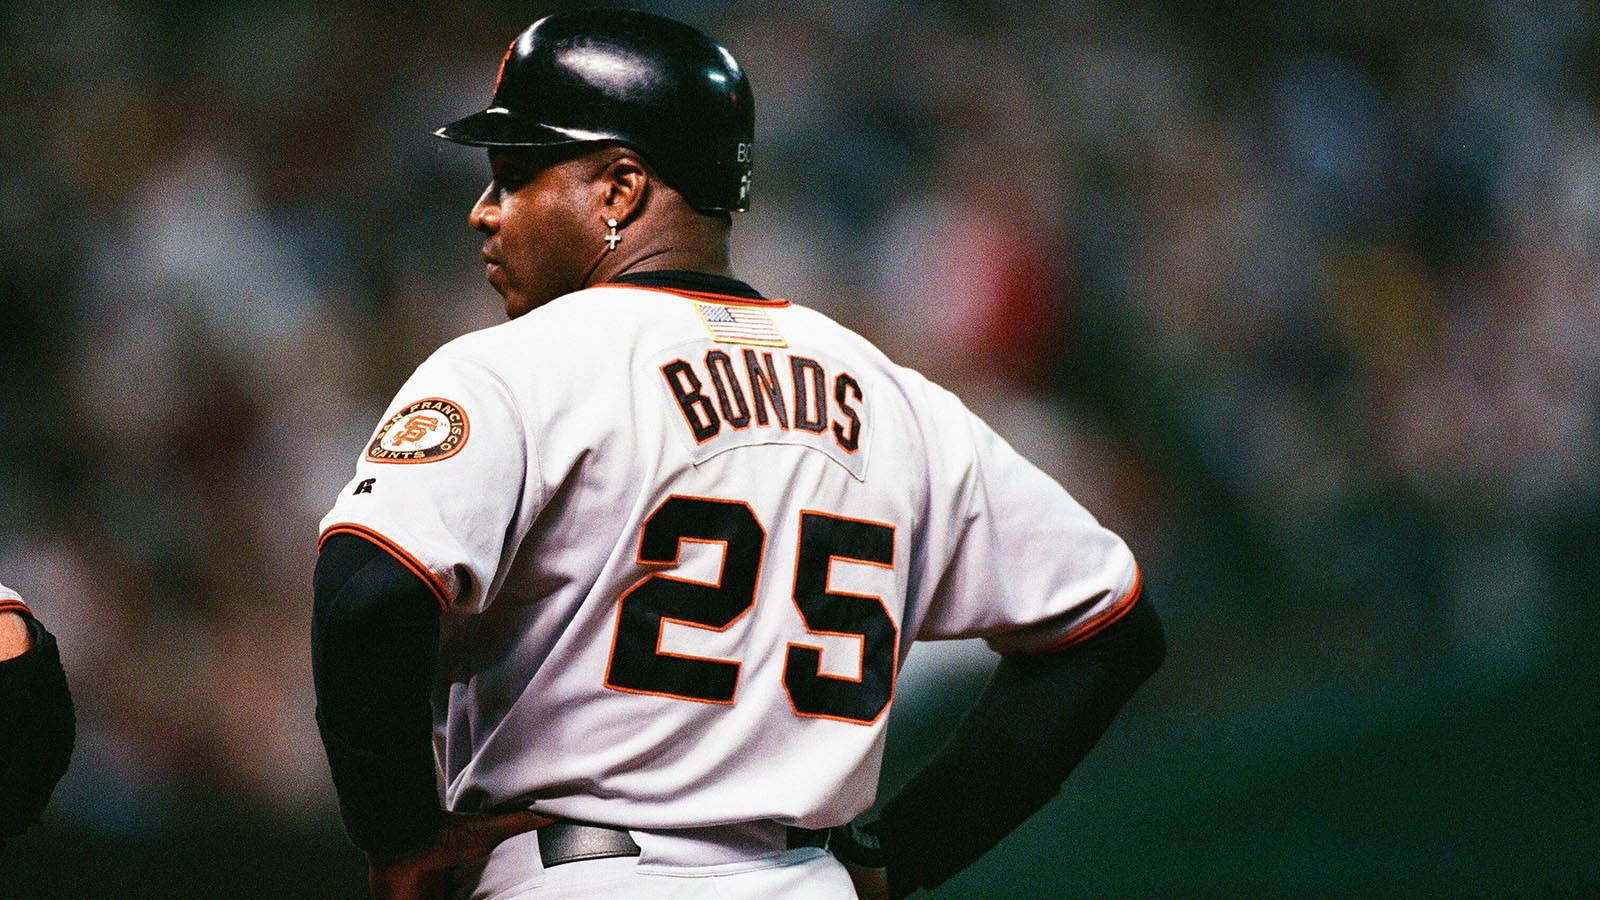 Barry Bonds Baseball Uniform Wallpaper